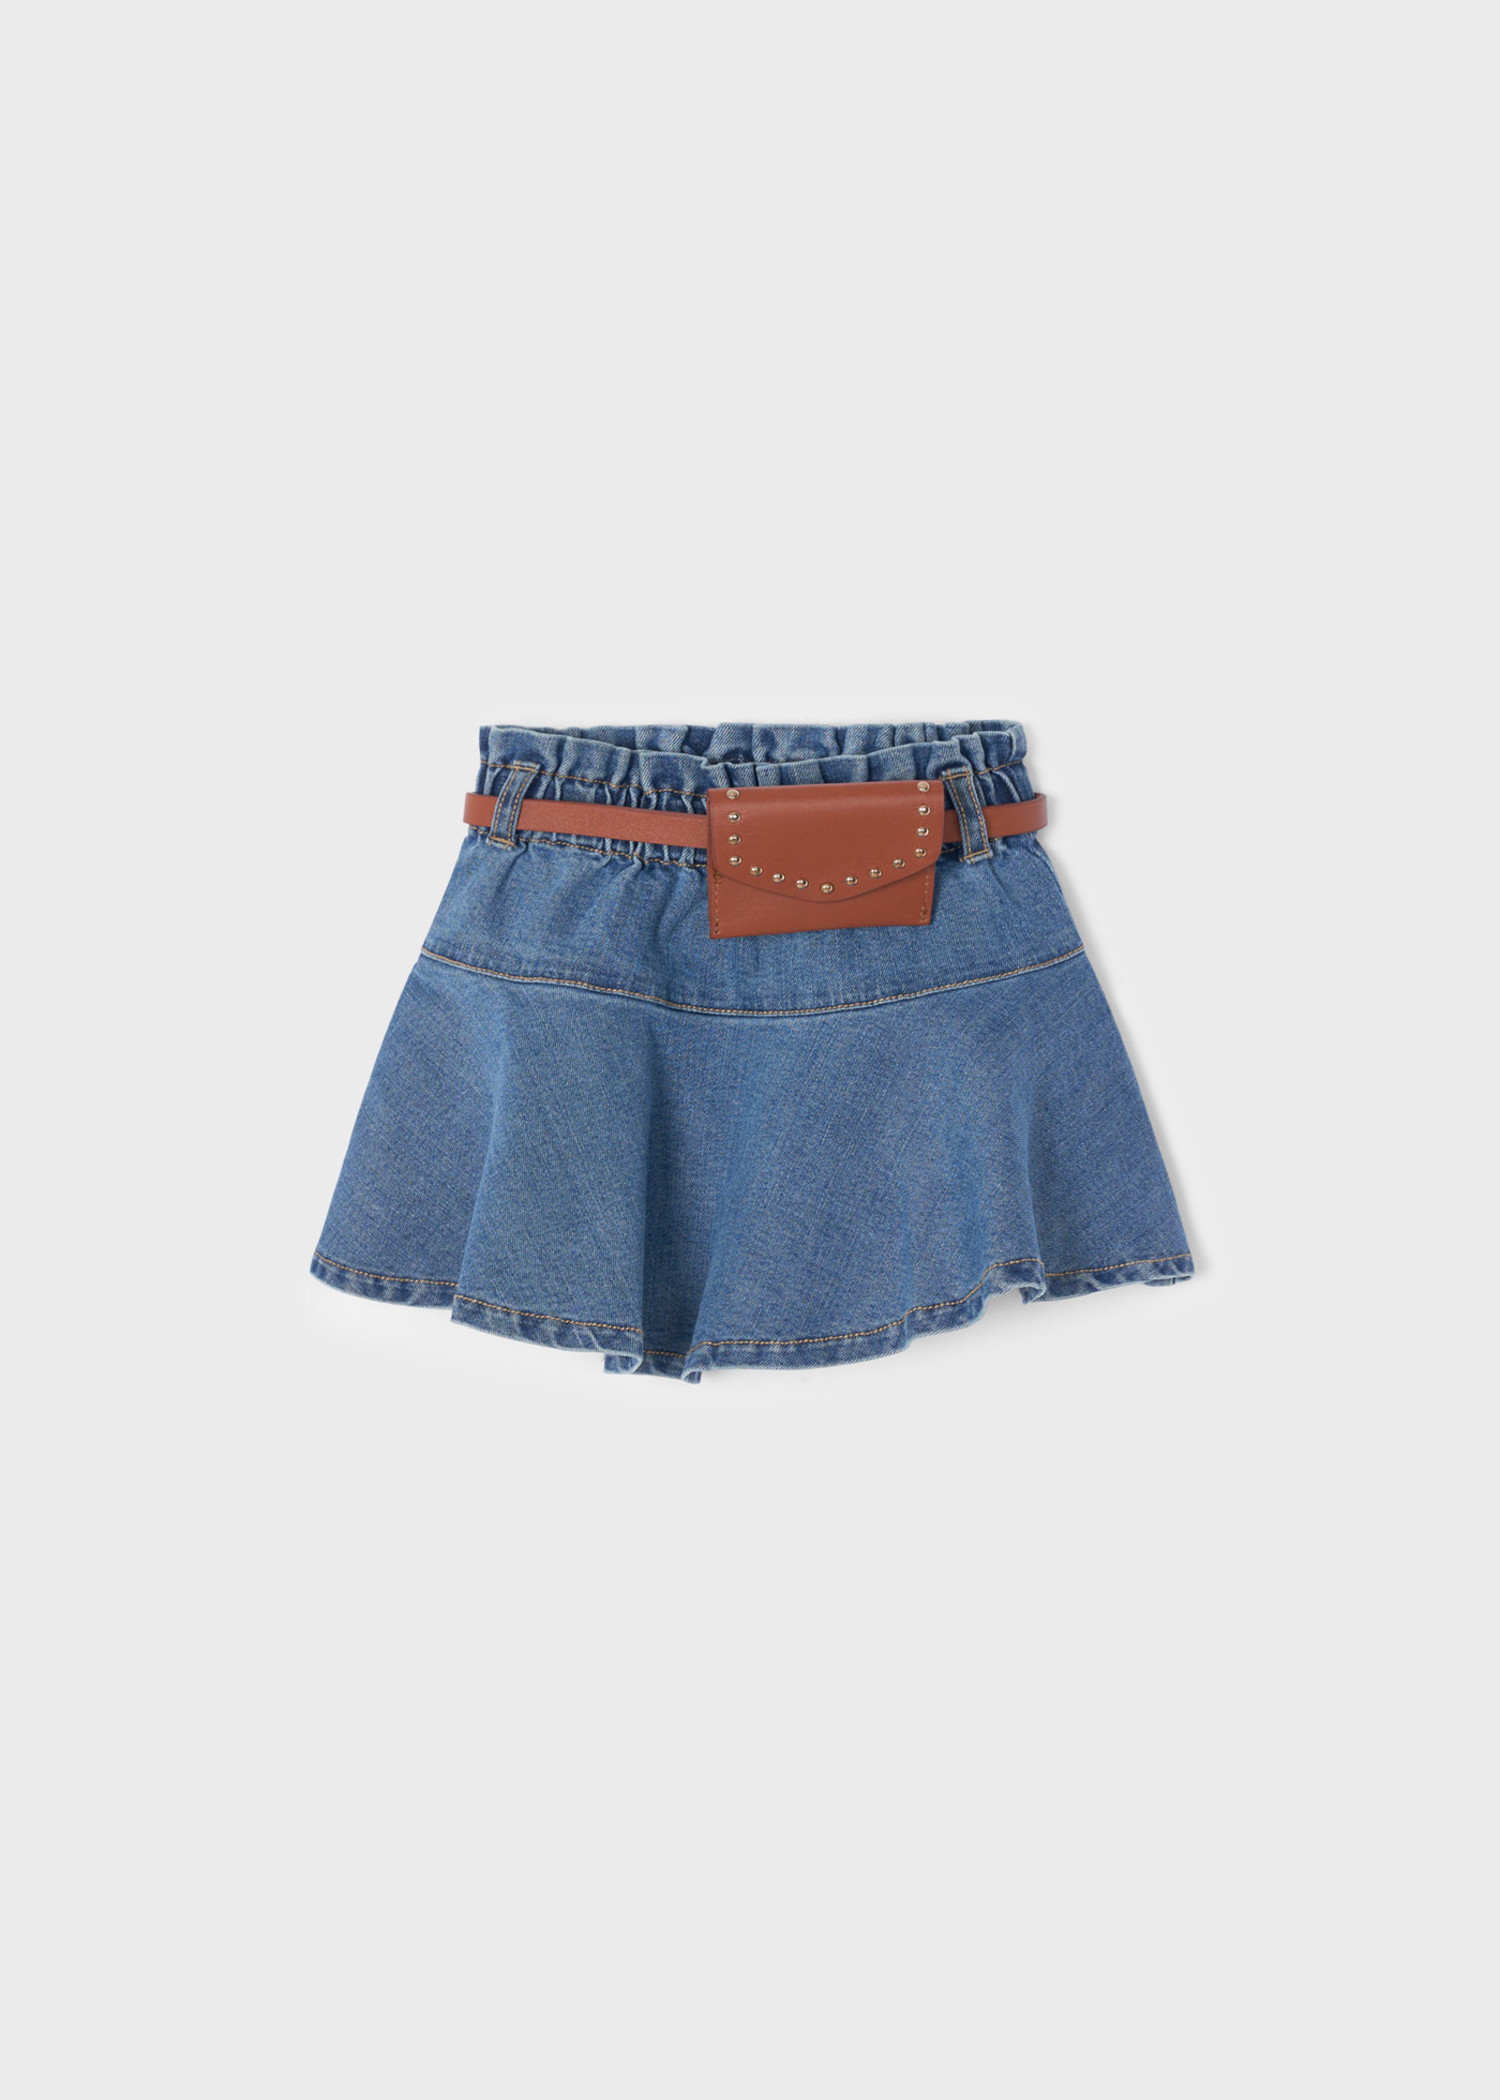 Toddler Baby Girl Plated Jean Skirt Children Summer Denim Skirts for Girls  - AliExpress